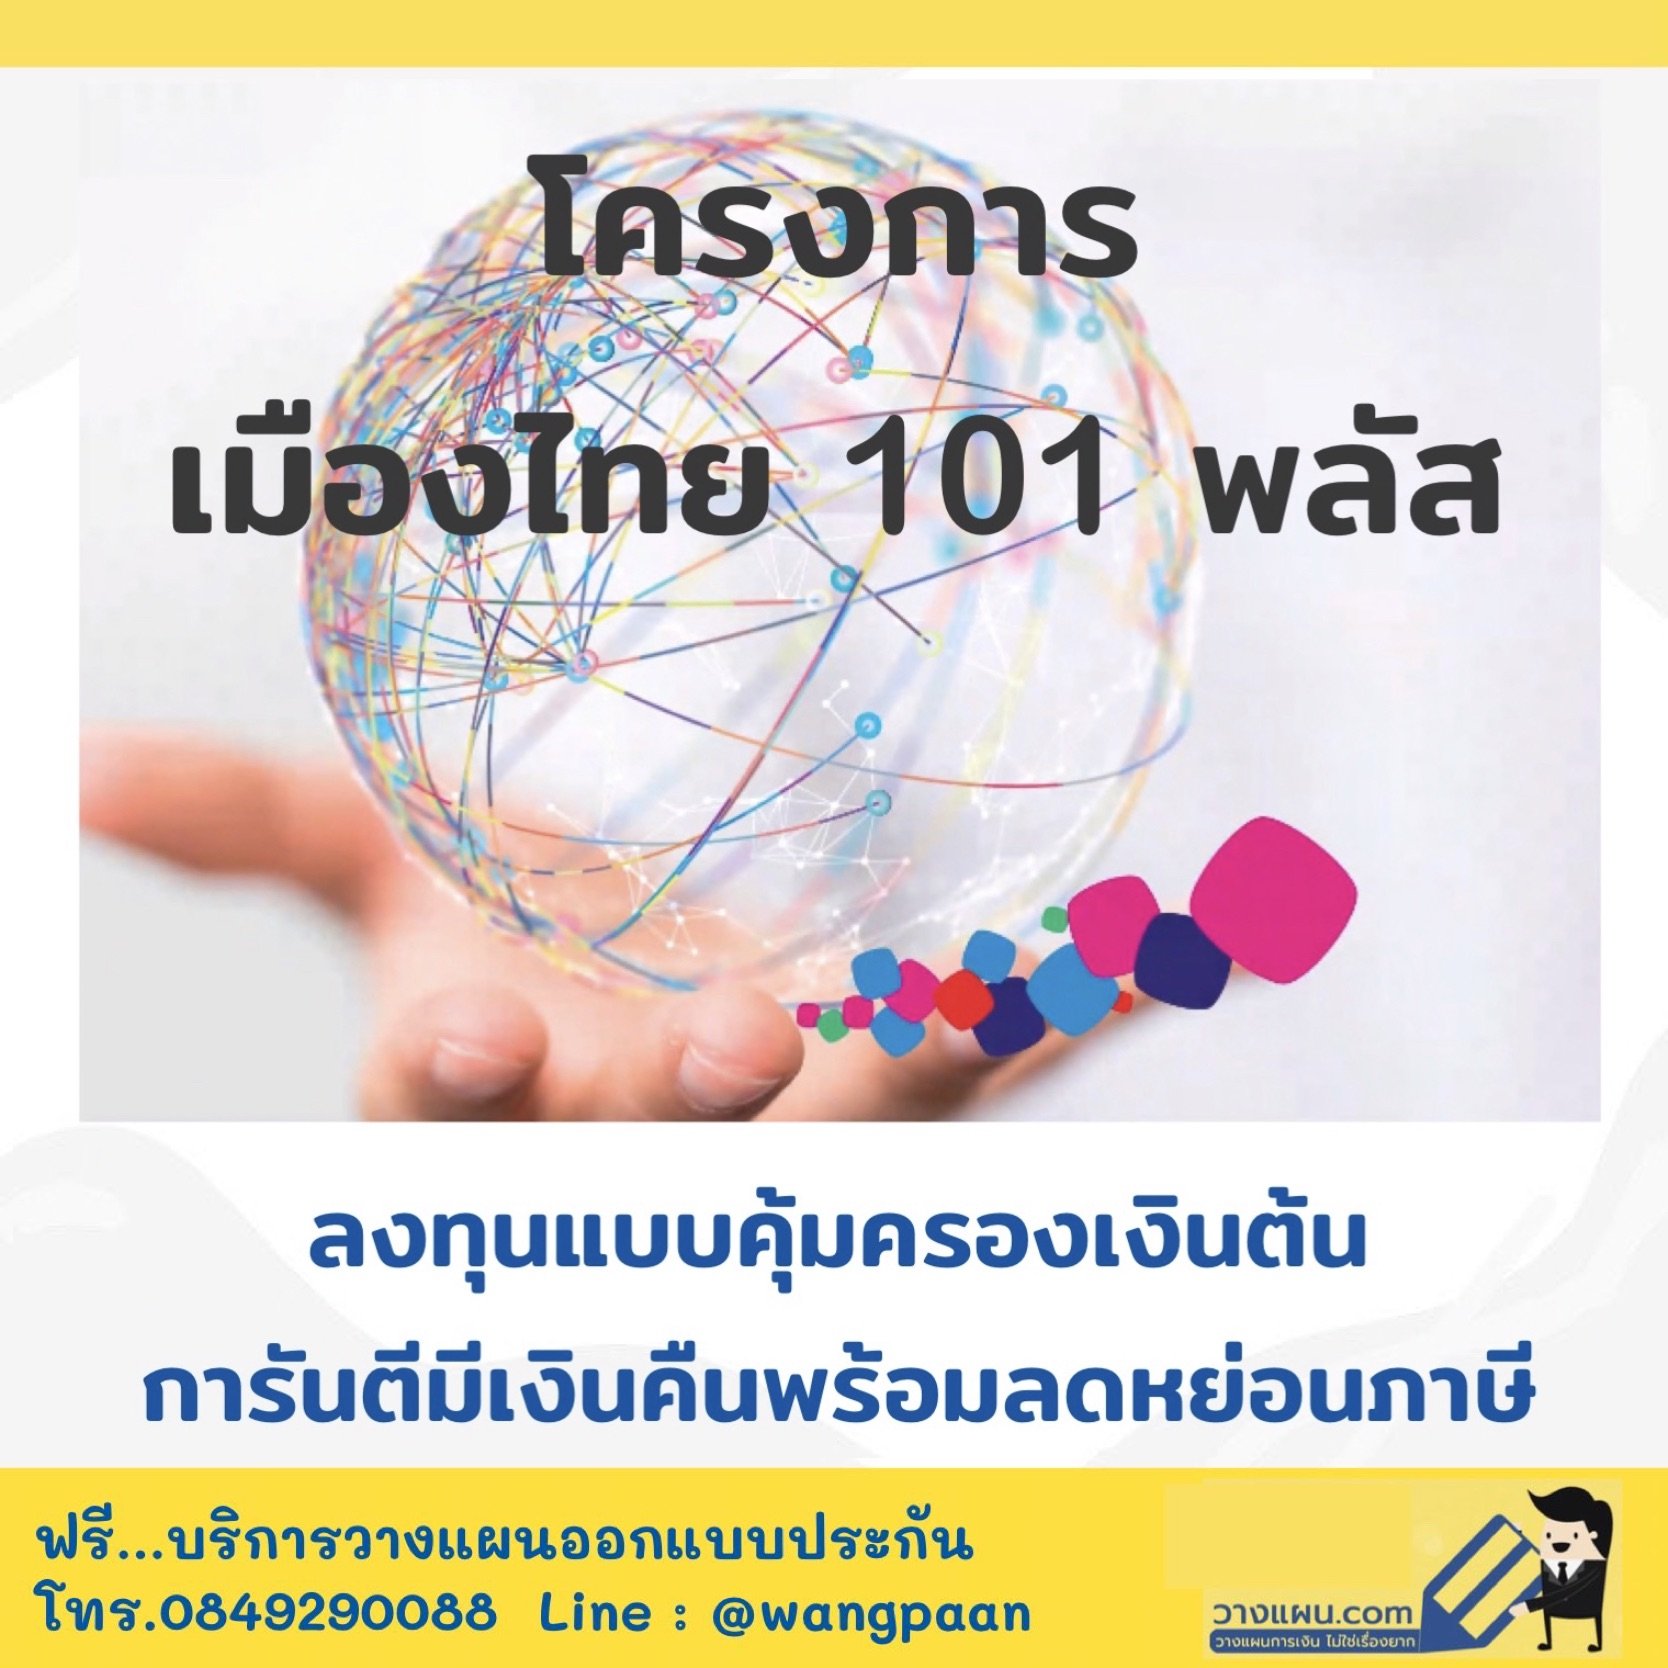 เมืองไทย 101 พลัส ลงทุนทั่วโลก ออมงวดเดียว การันตีผลตอบแทน คุ้มครองเงินต้น